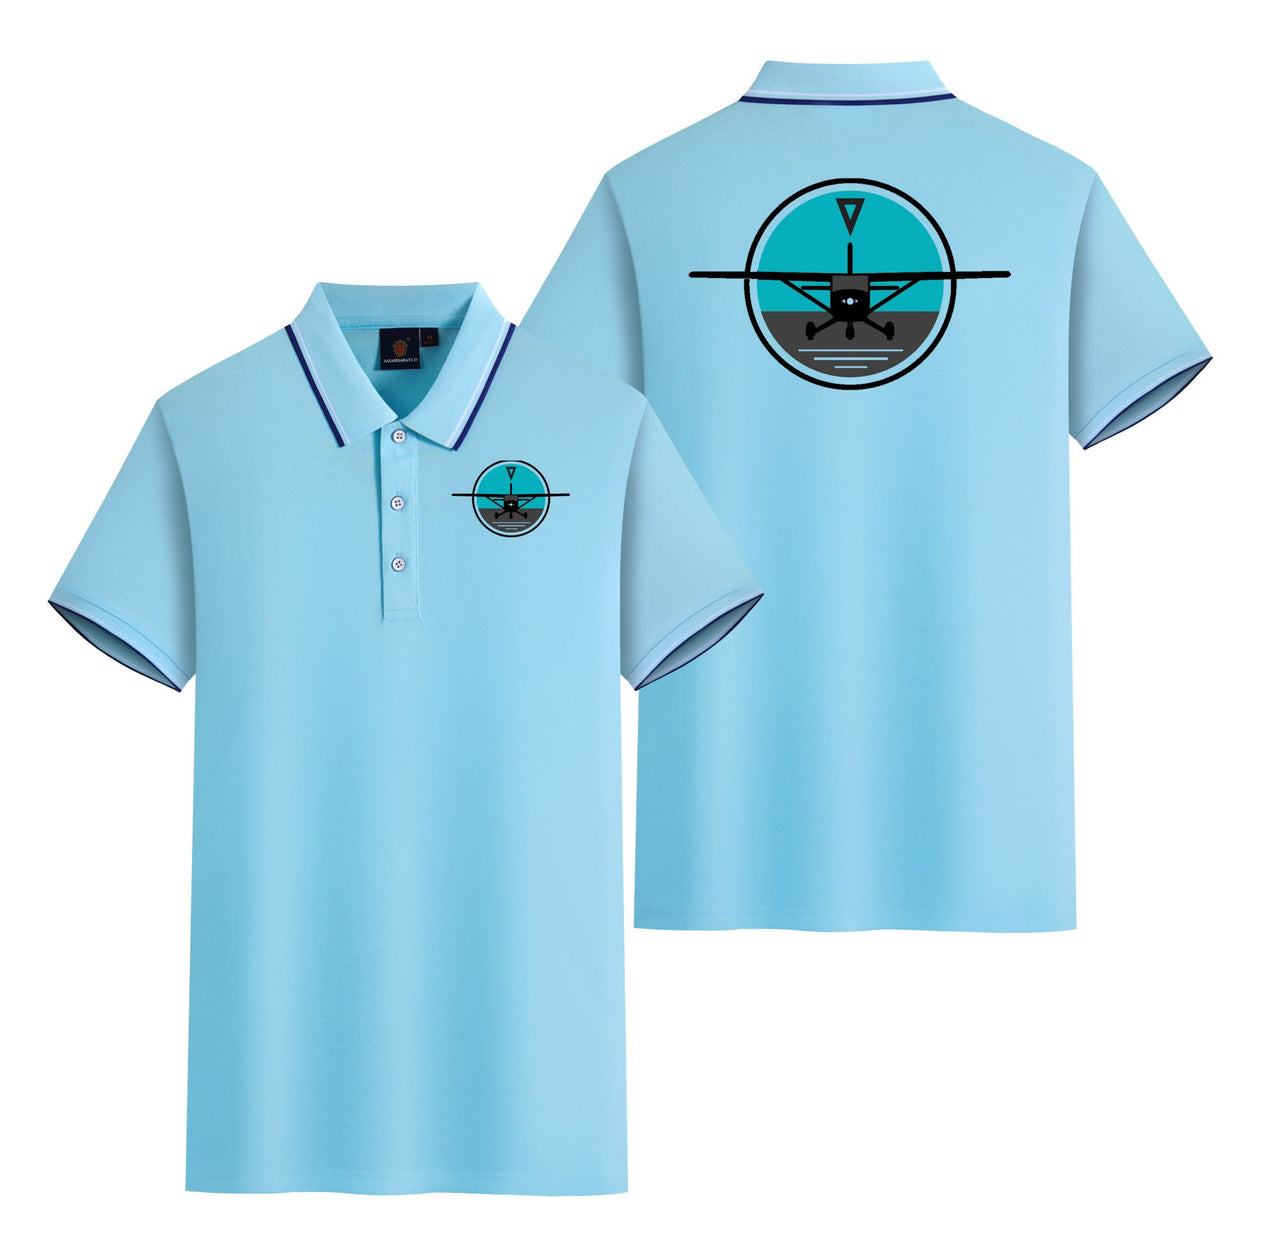 Cessna & Gyro Designed Stylish Polo T-Shirts (Double-Side)